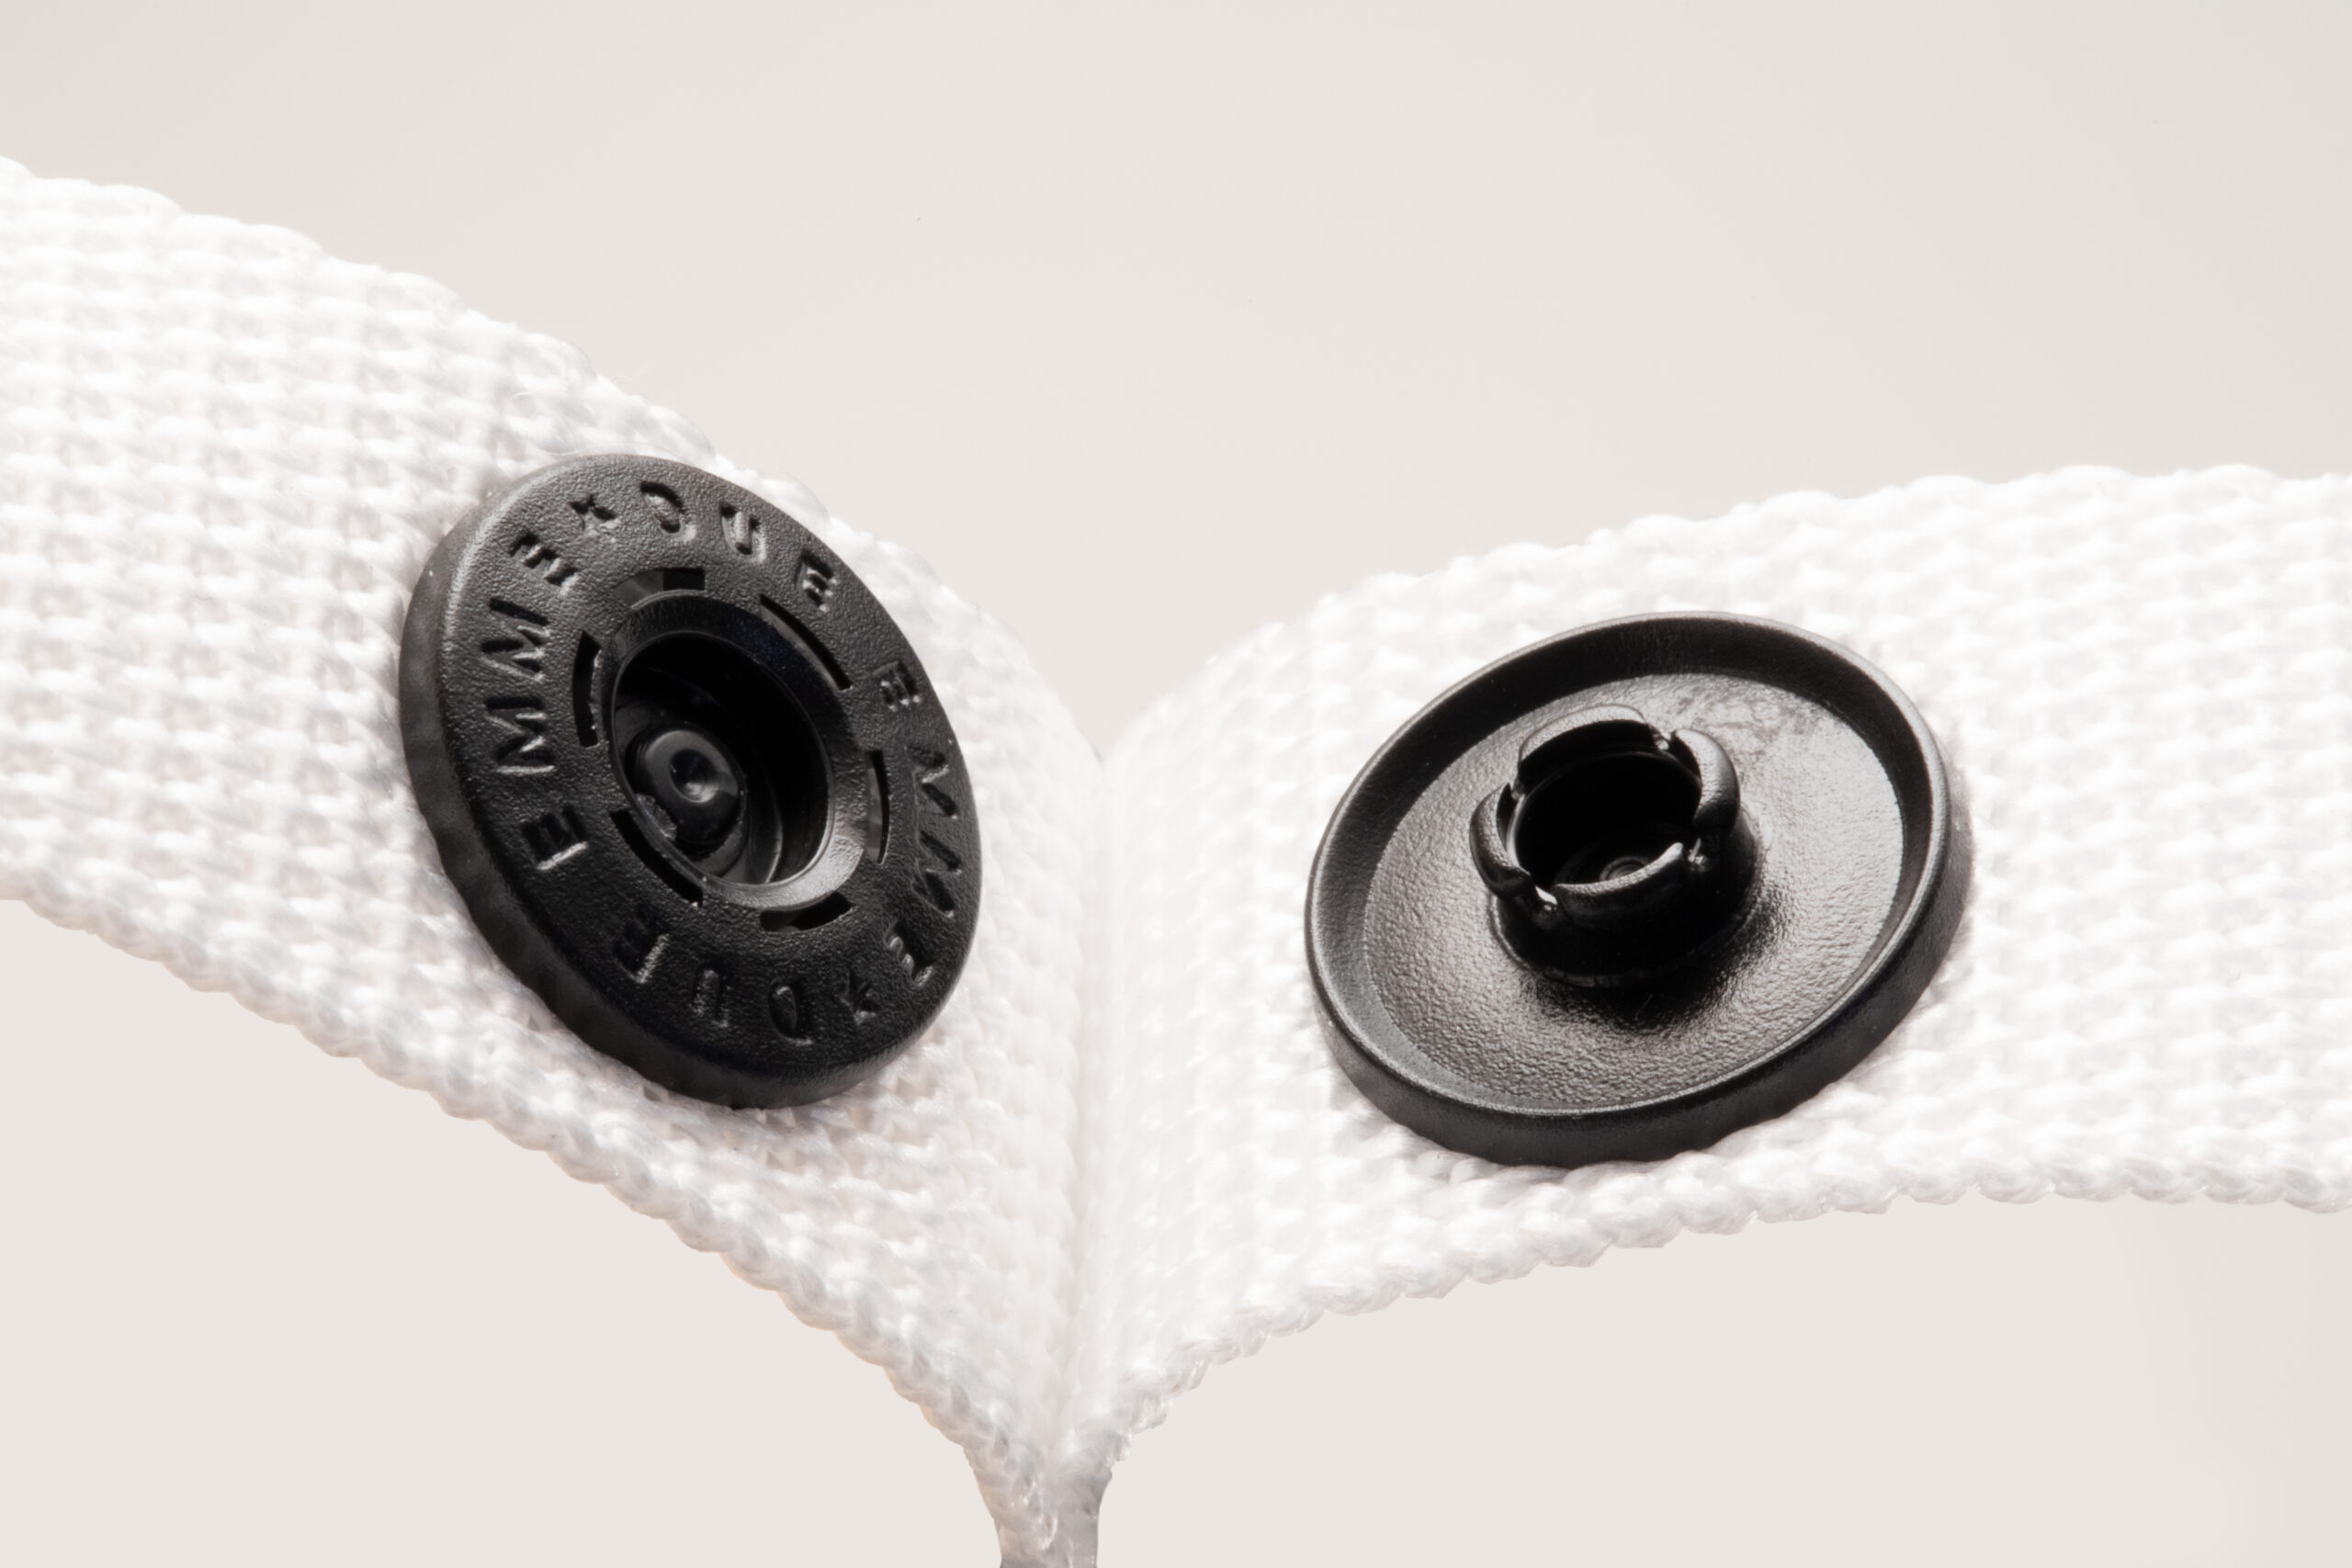 Bottone a pressione - News  2m-Italia, accessori termoplastici di qualità